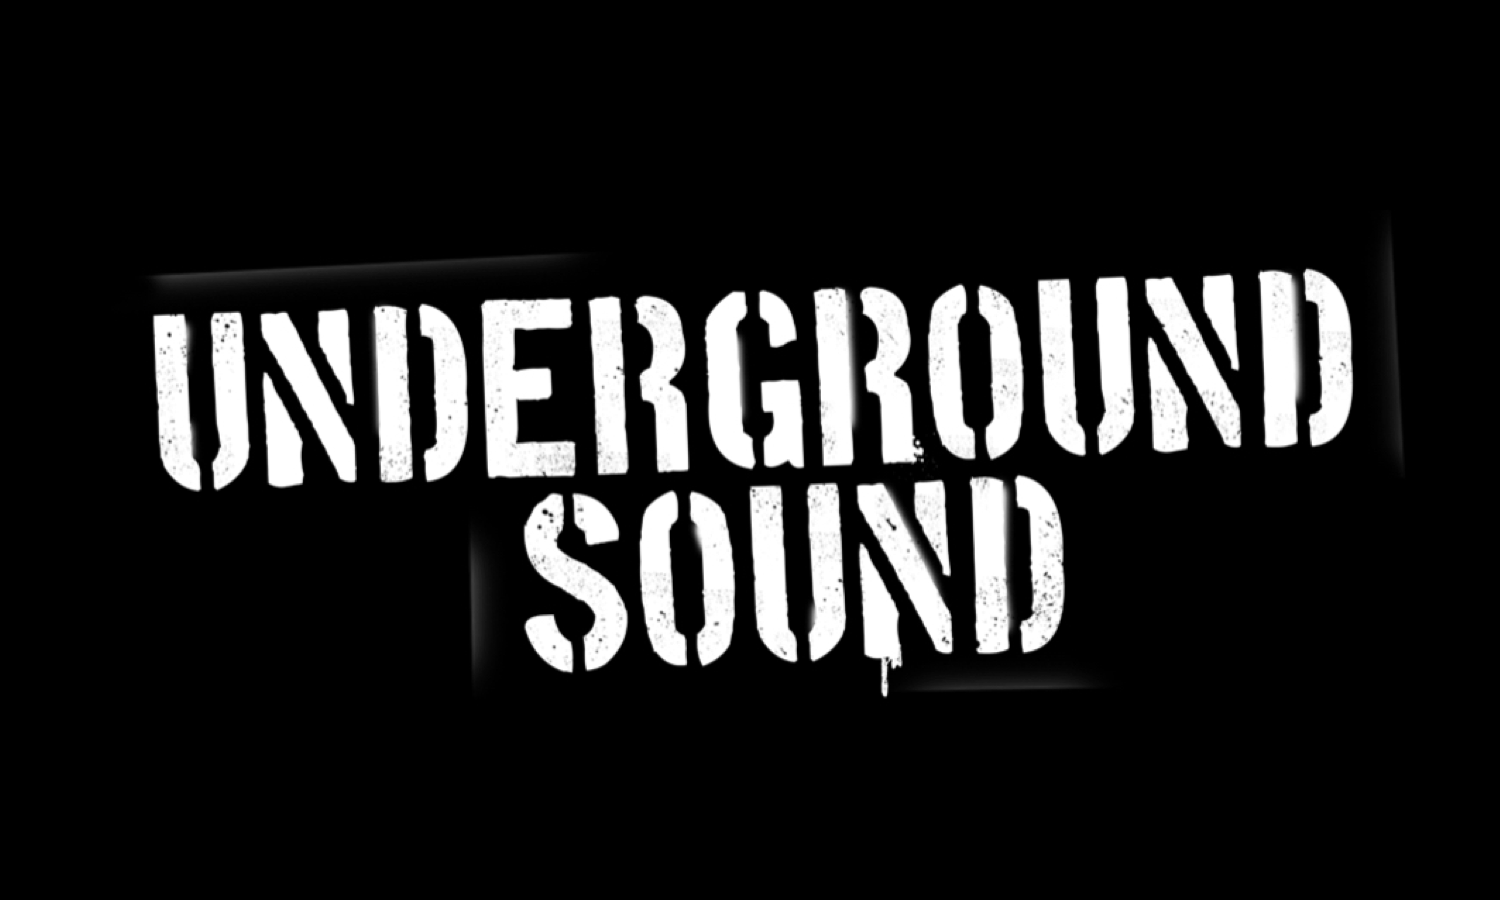 Chevy Underground Sound